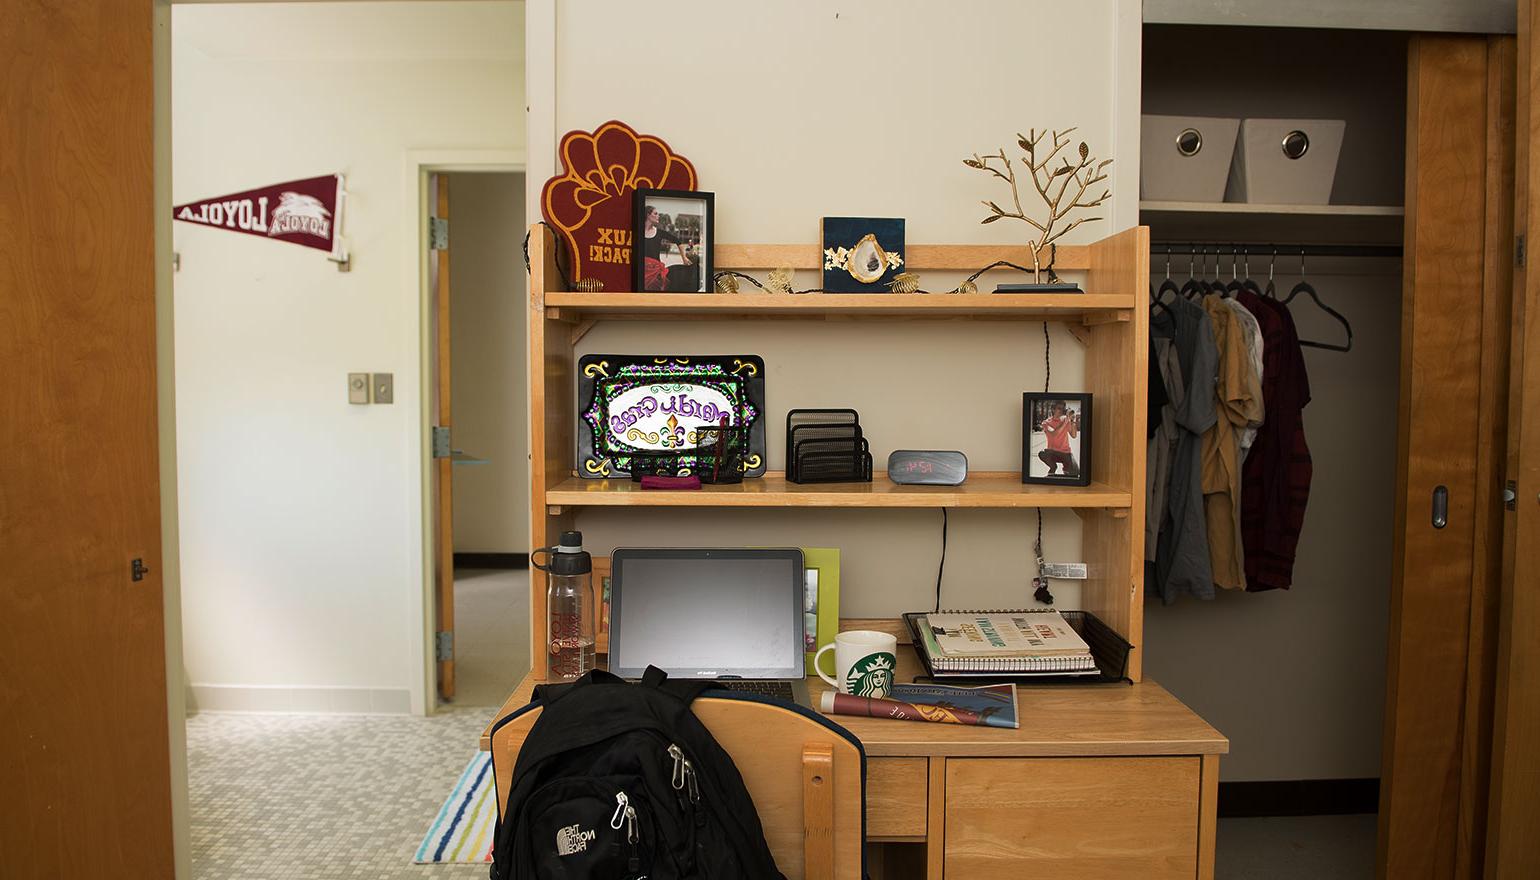 视图 of desk space and hallway in dorm